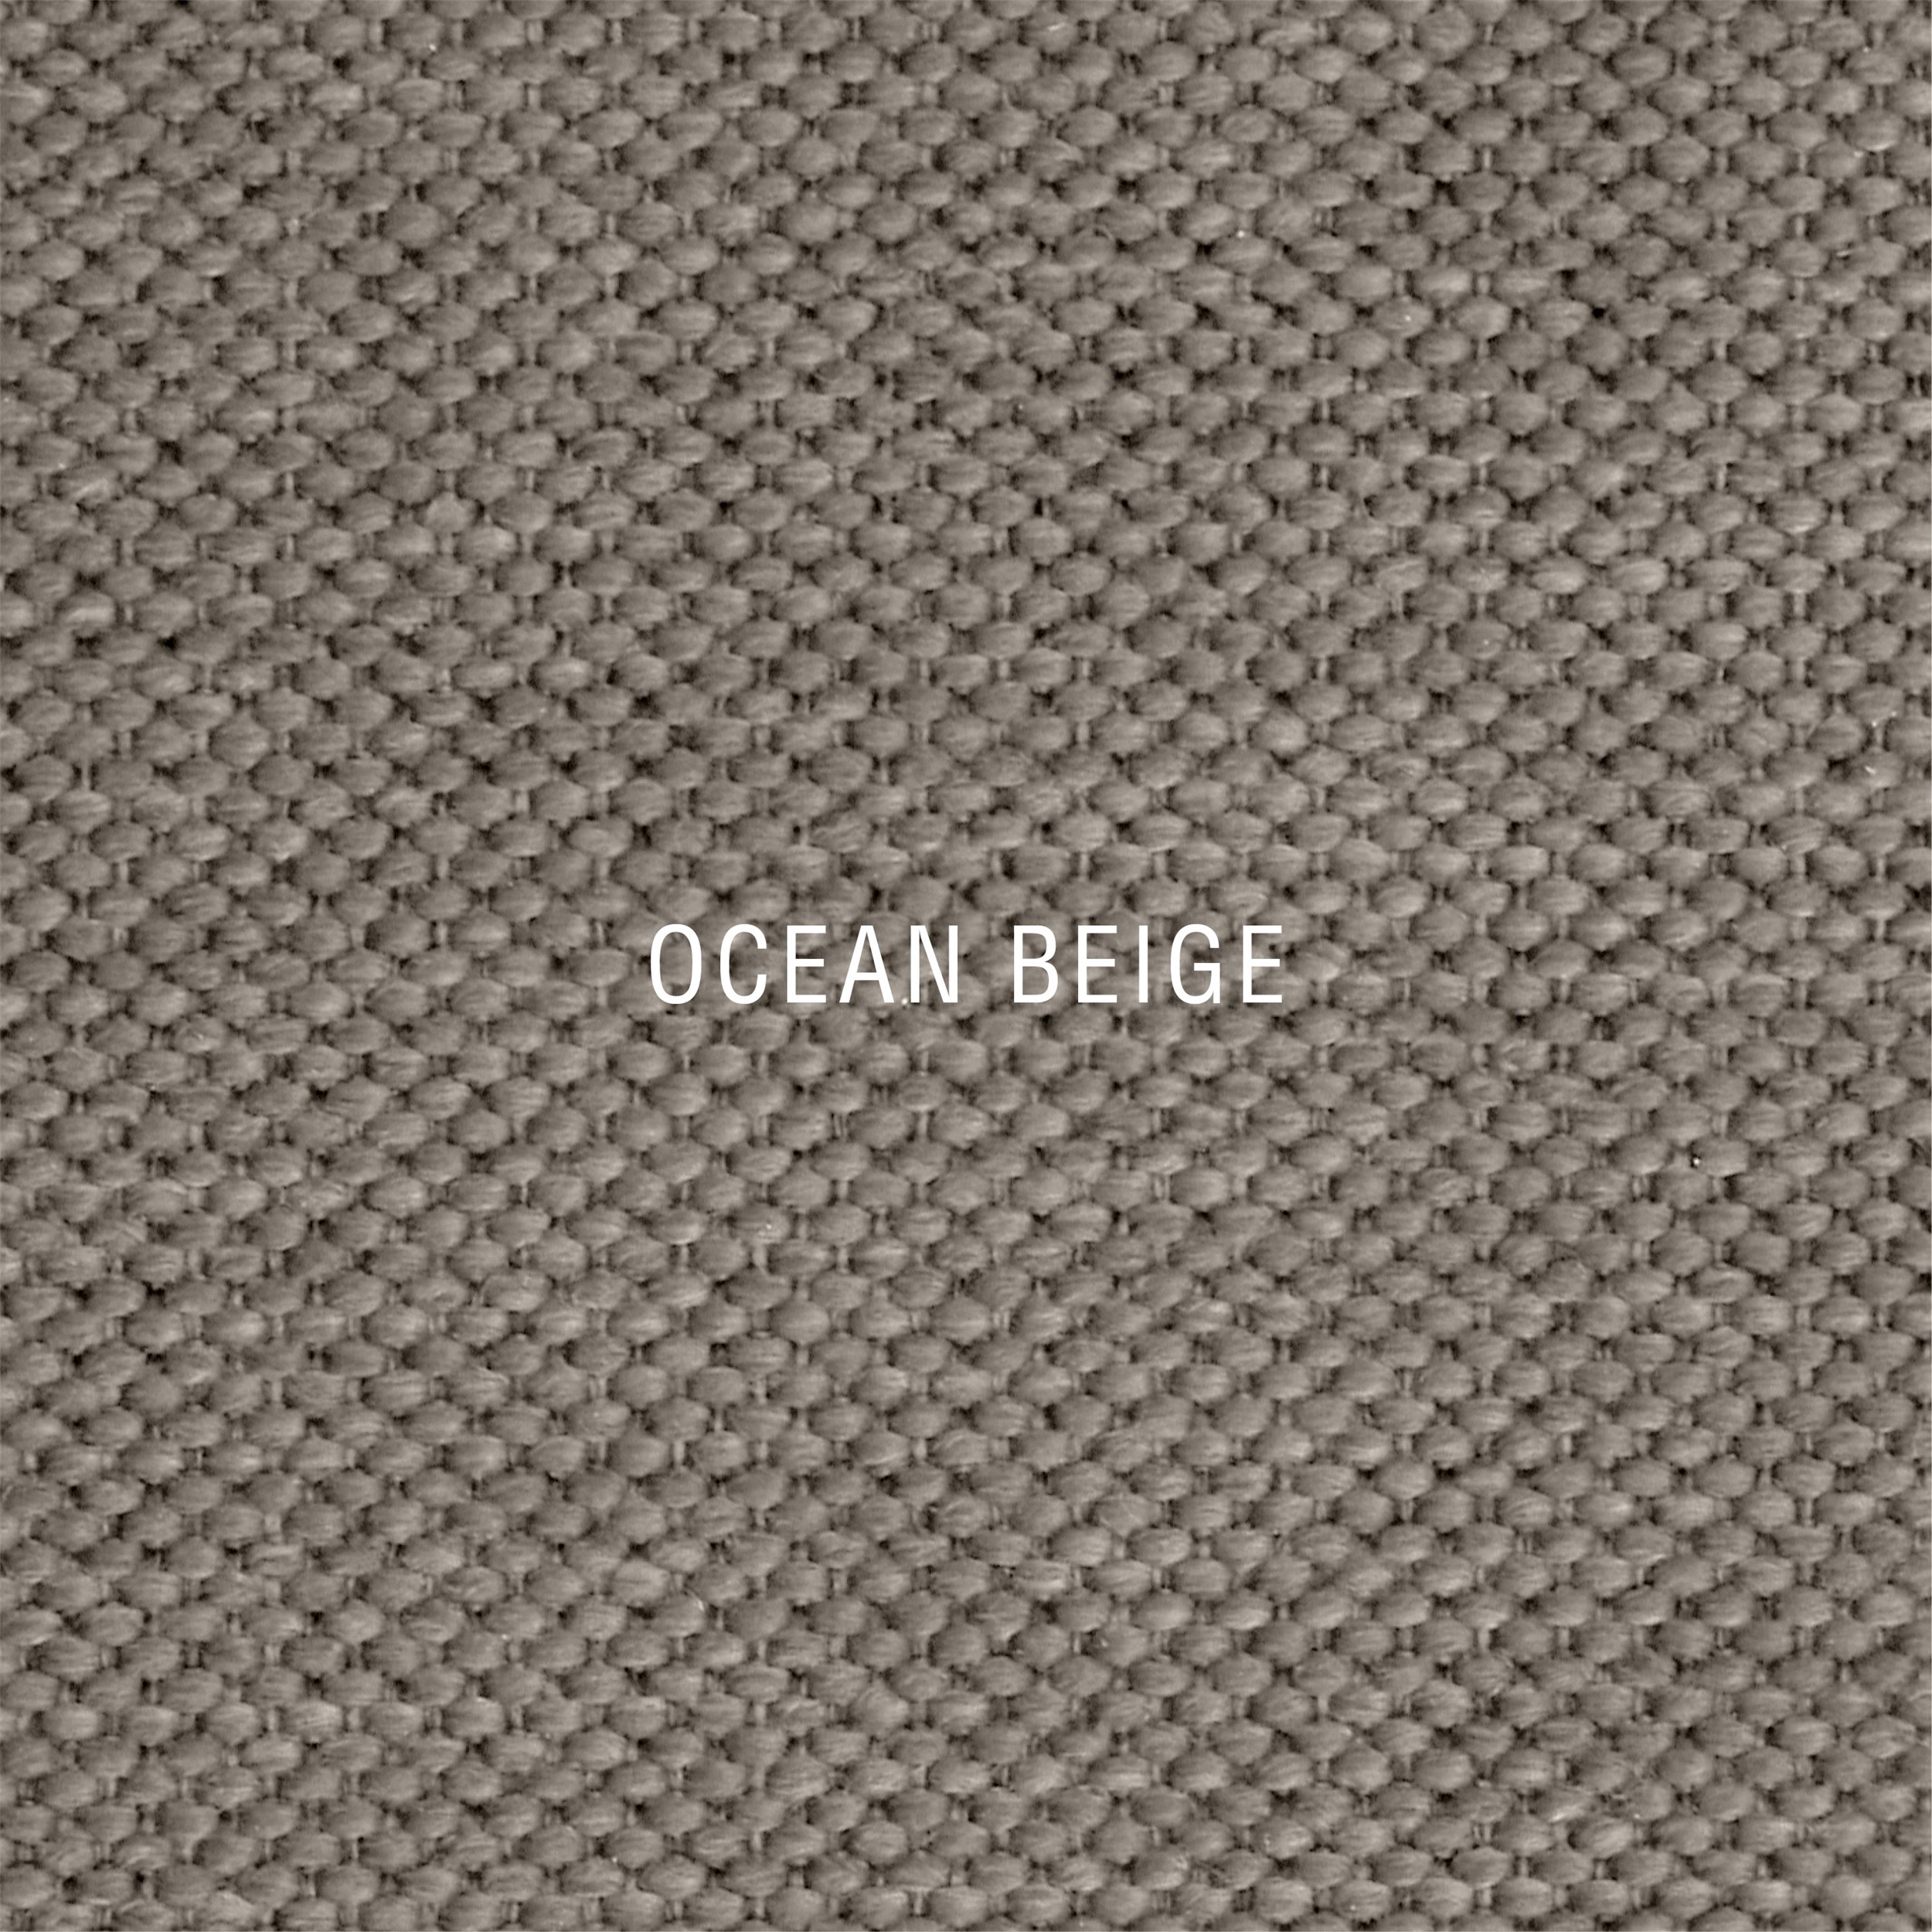 Nocturne Exclusive Ocean Inkl. 6 cm Exclusive topmadrasser, 180 x 200 cm elevationsseng